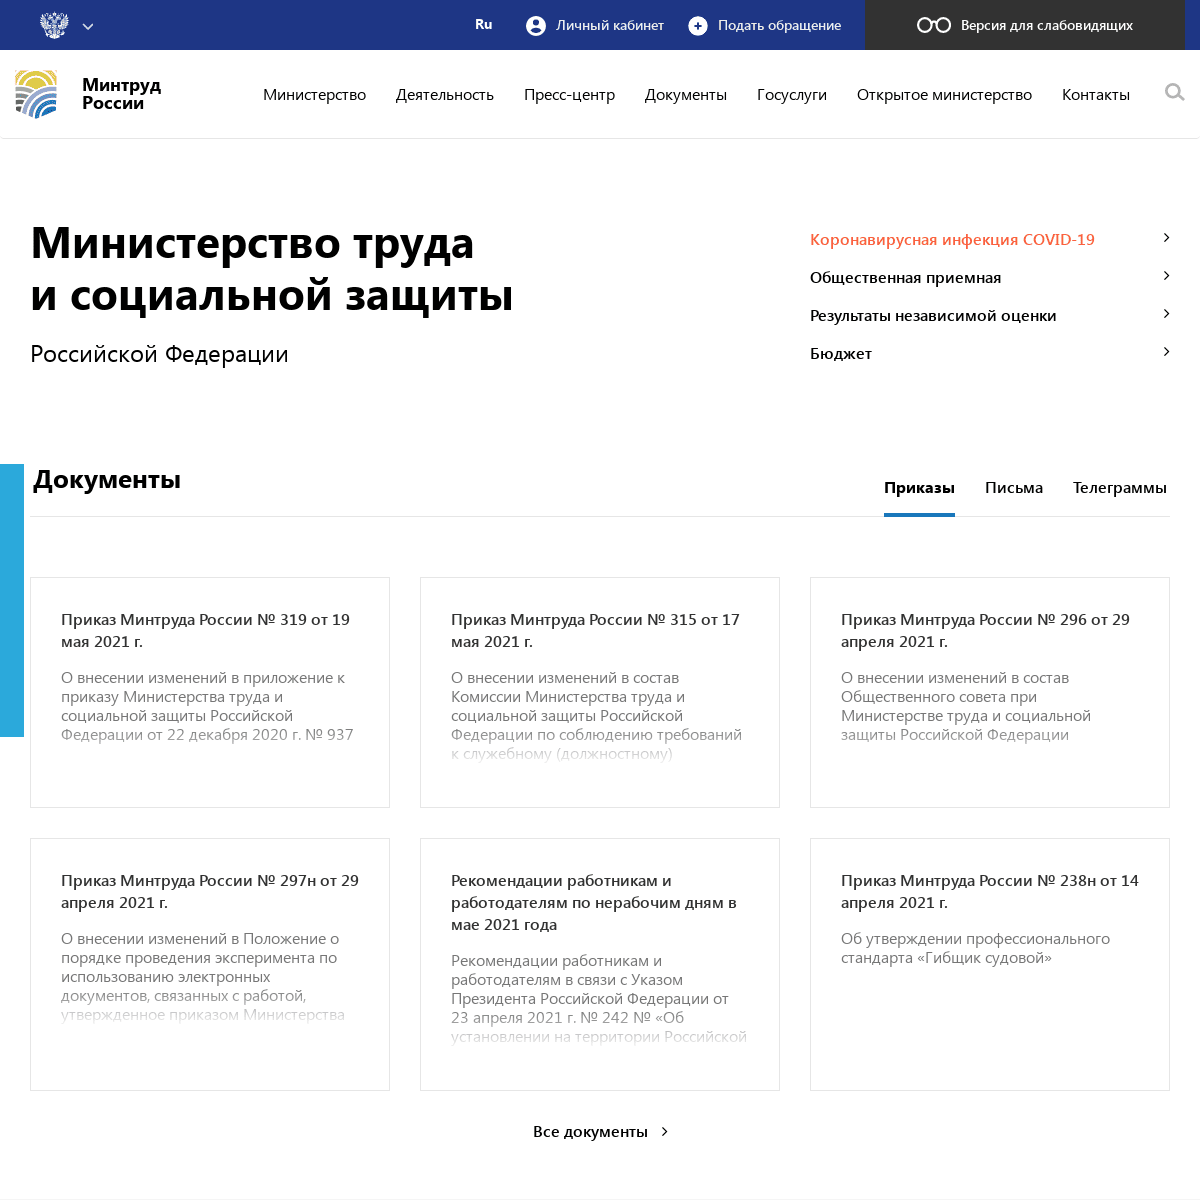 A complete backup of https://rosmintrud.ru